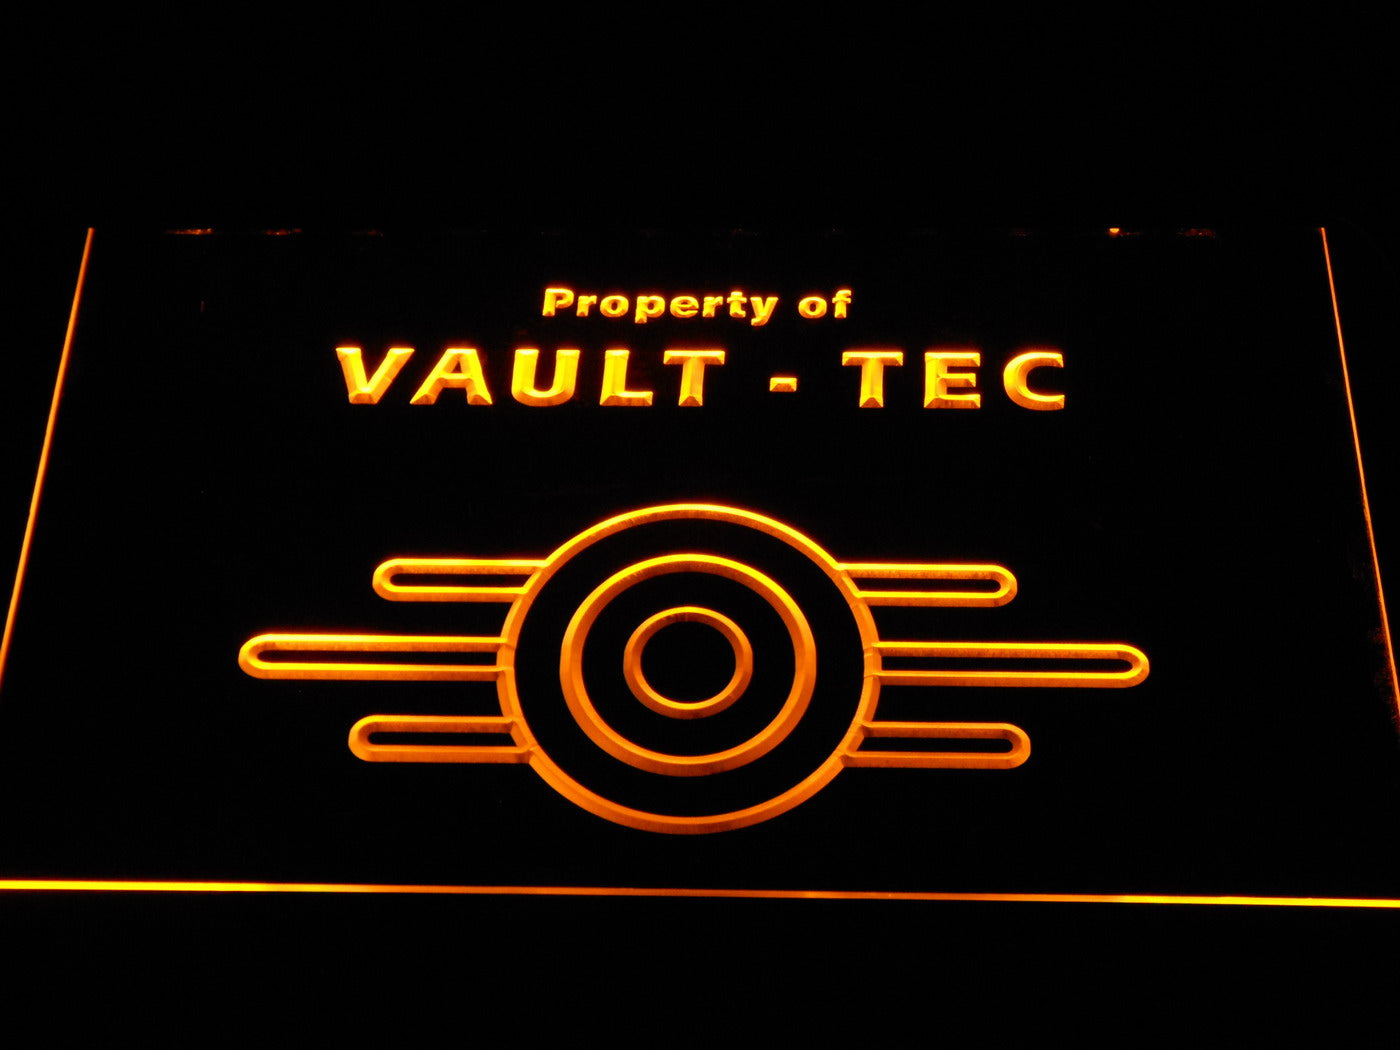 Vaultのフォールアウトプロパティ-TecネオンライトLEDサイン